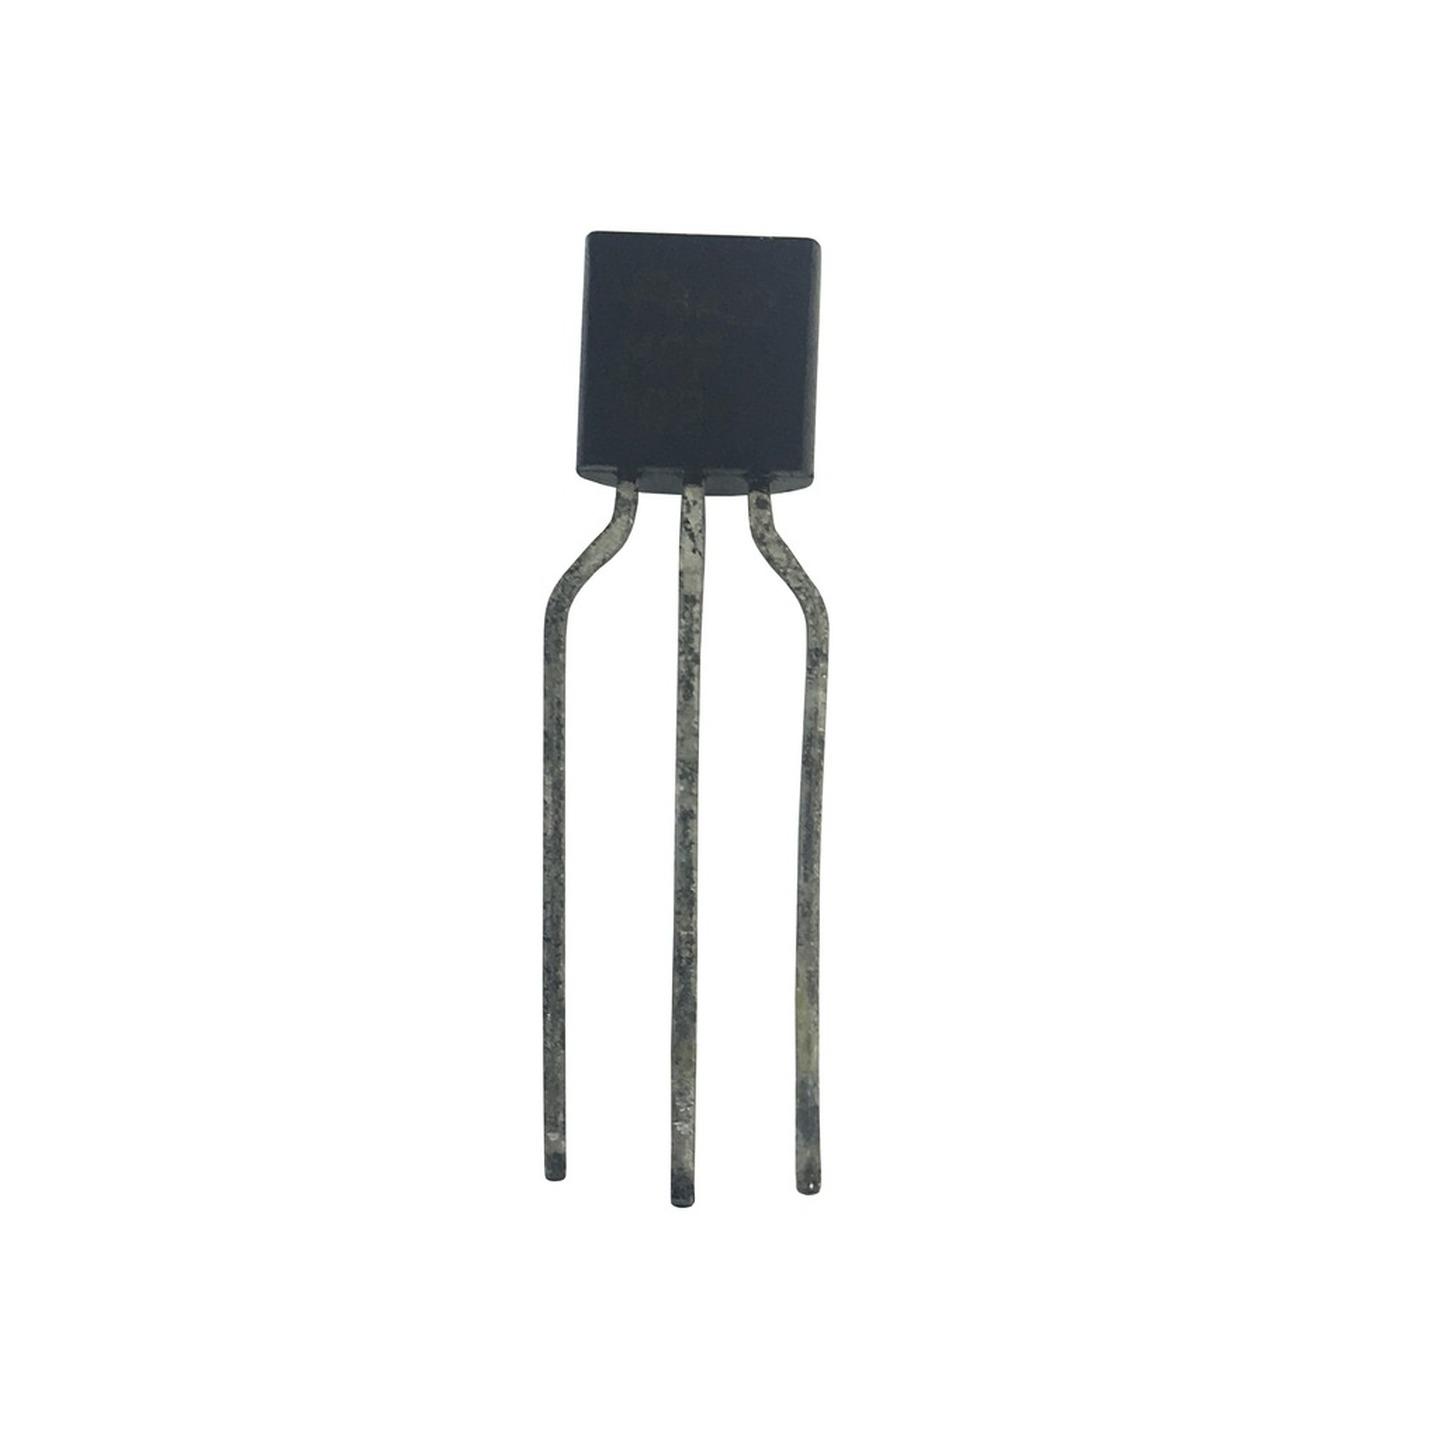 PN200 PNP Multi-replacement Transistor